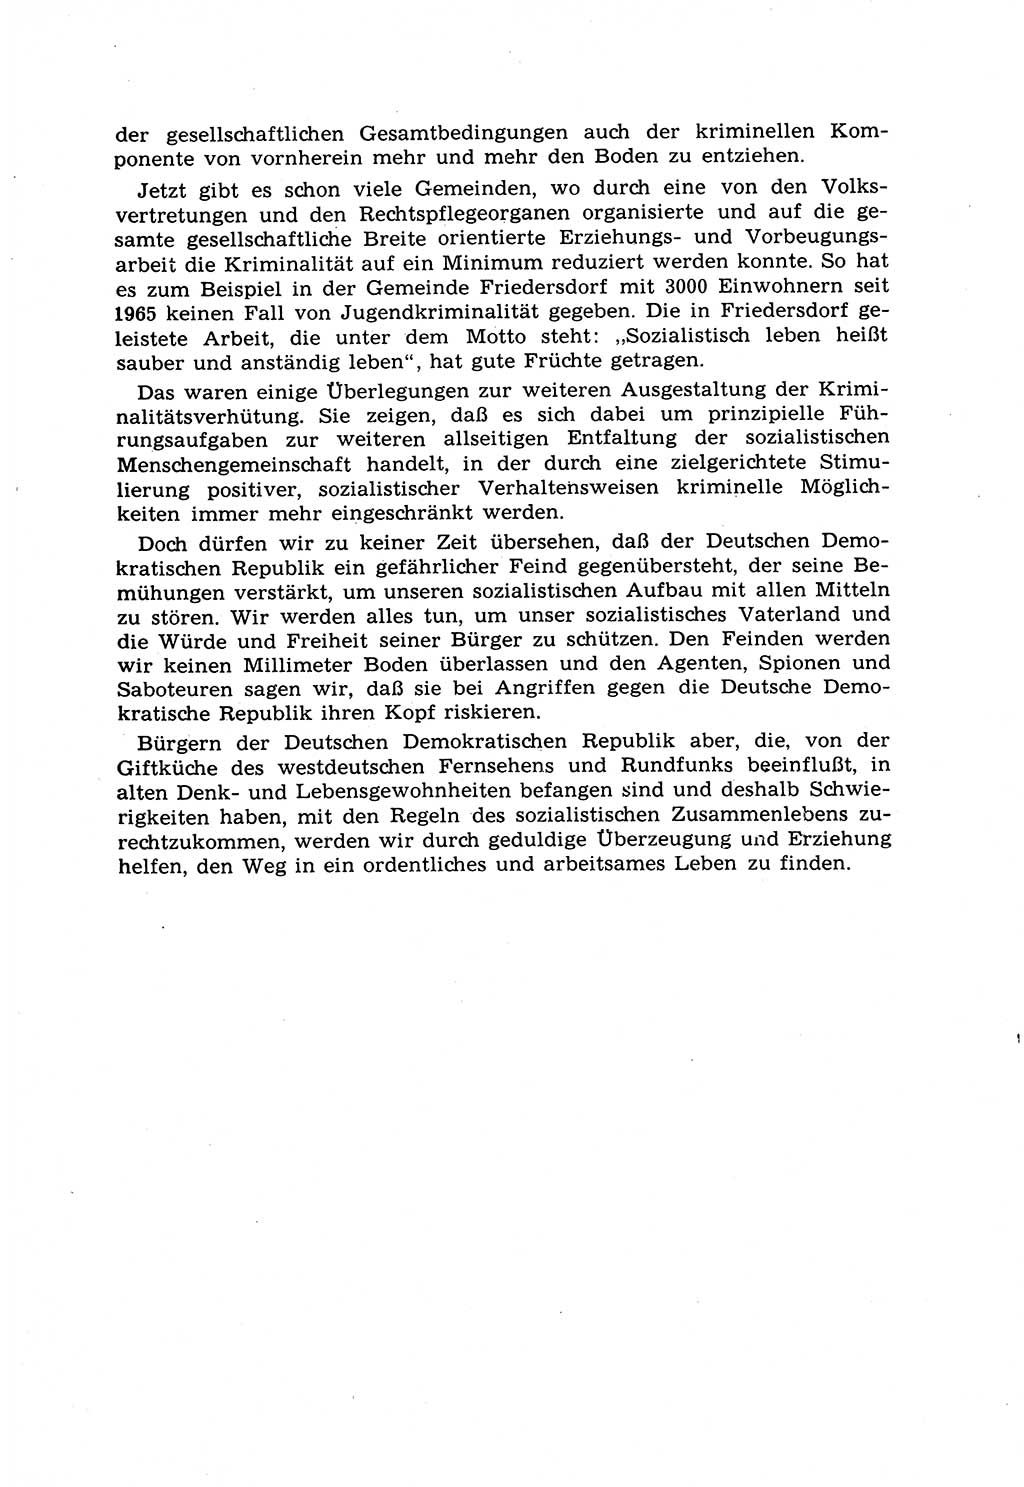 Strafrecht [Deutsche Demokratische Republik (DDR)] 1968, Seite 103 (Strafr. DDR 1968, S. 103)